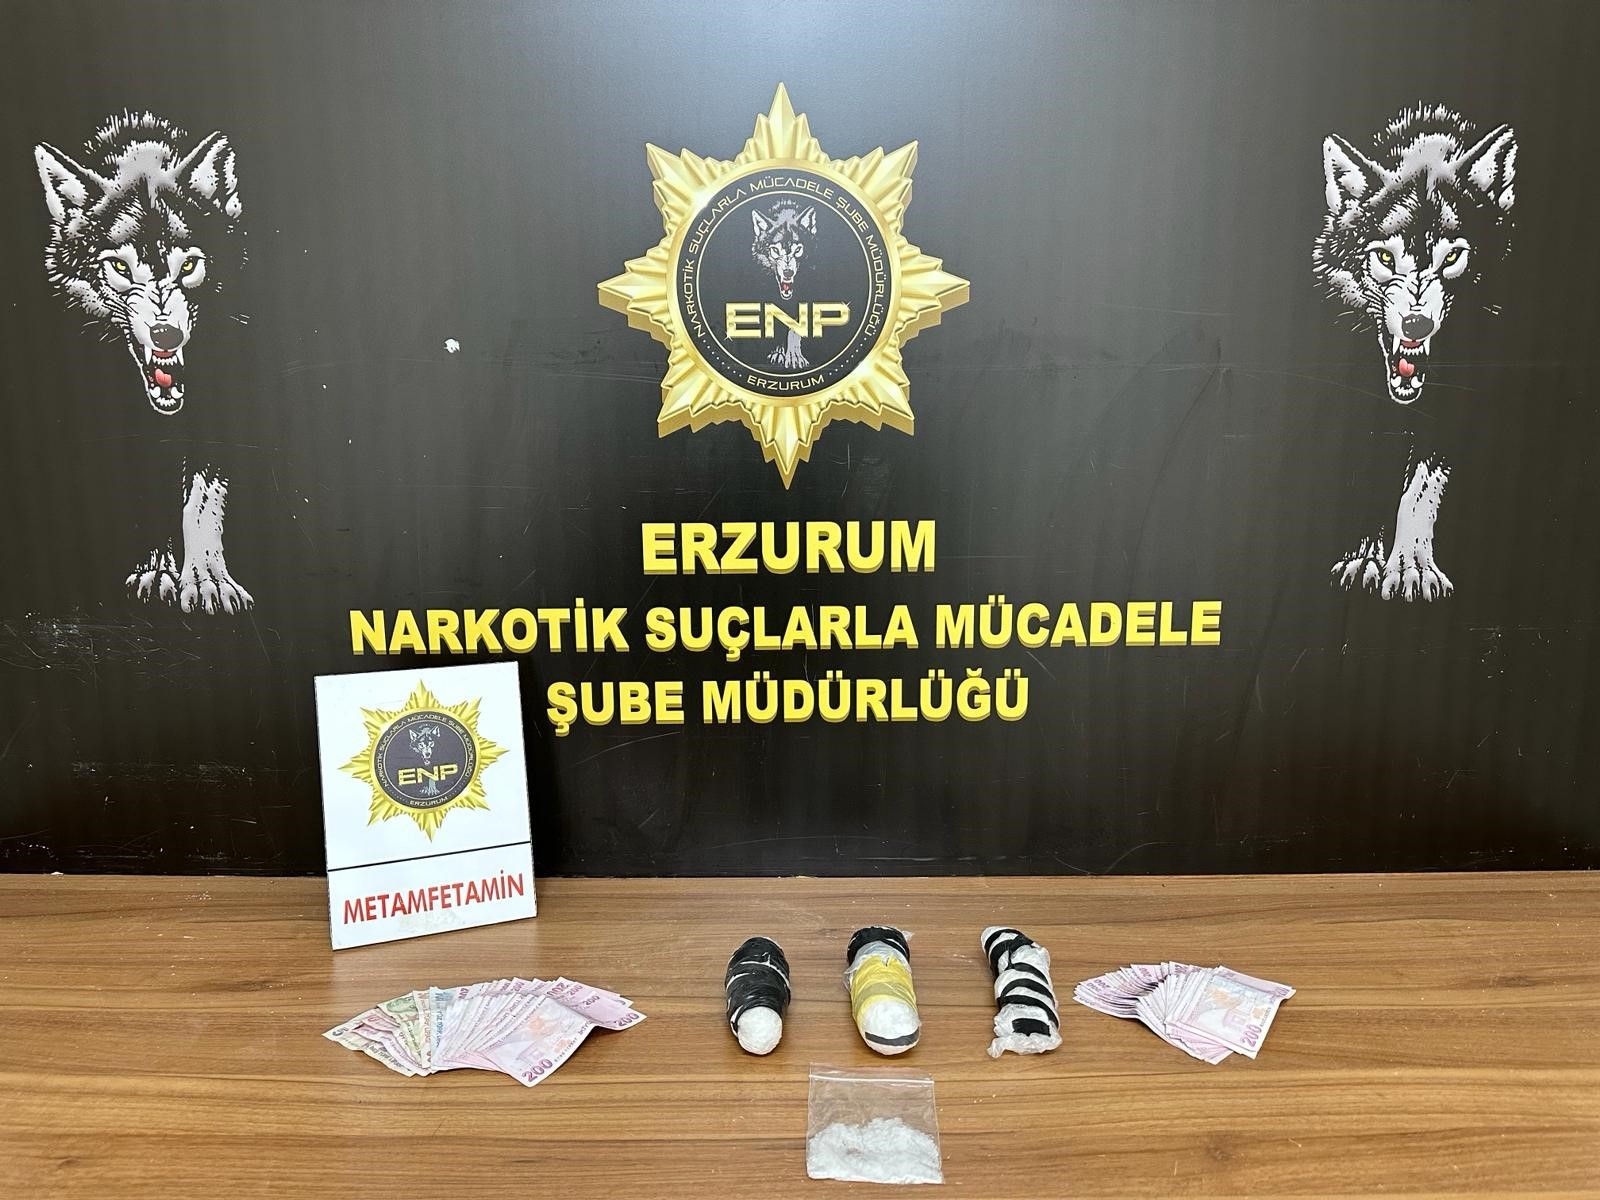 Erzurum'da 825,93 gram metamfetamin ele geçirildi